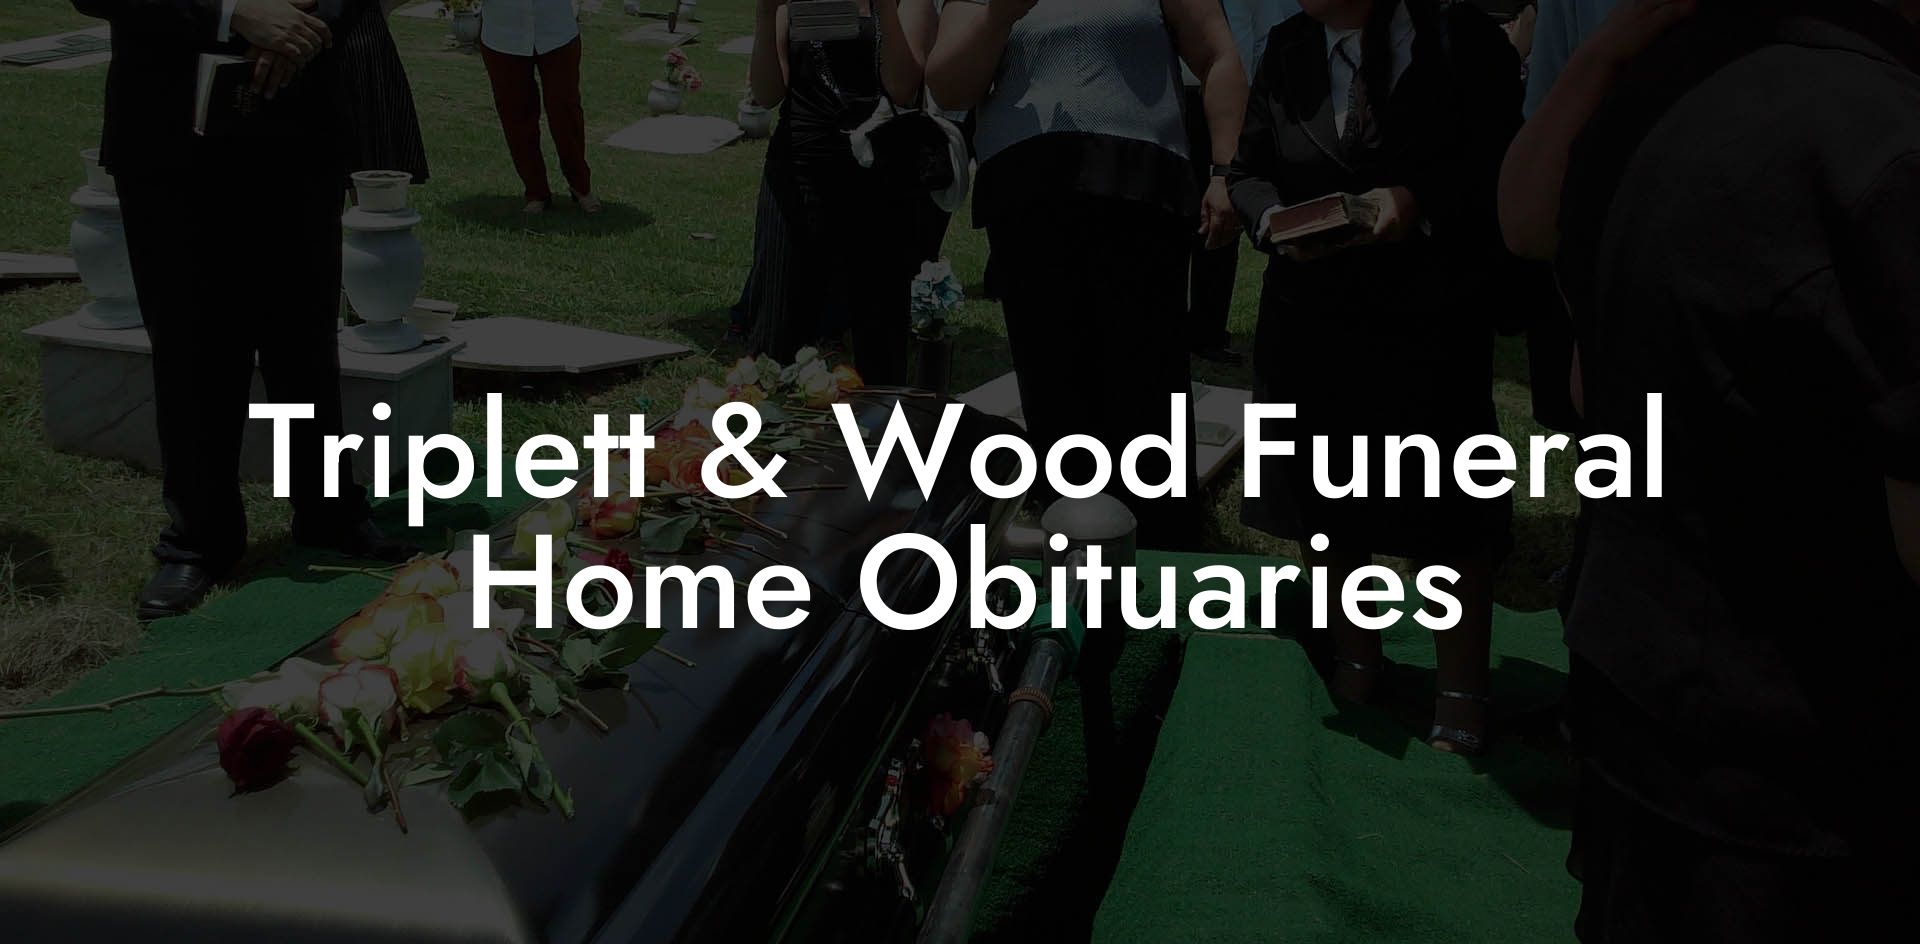 Triplett & Wood Funeral Home Obituaries